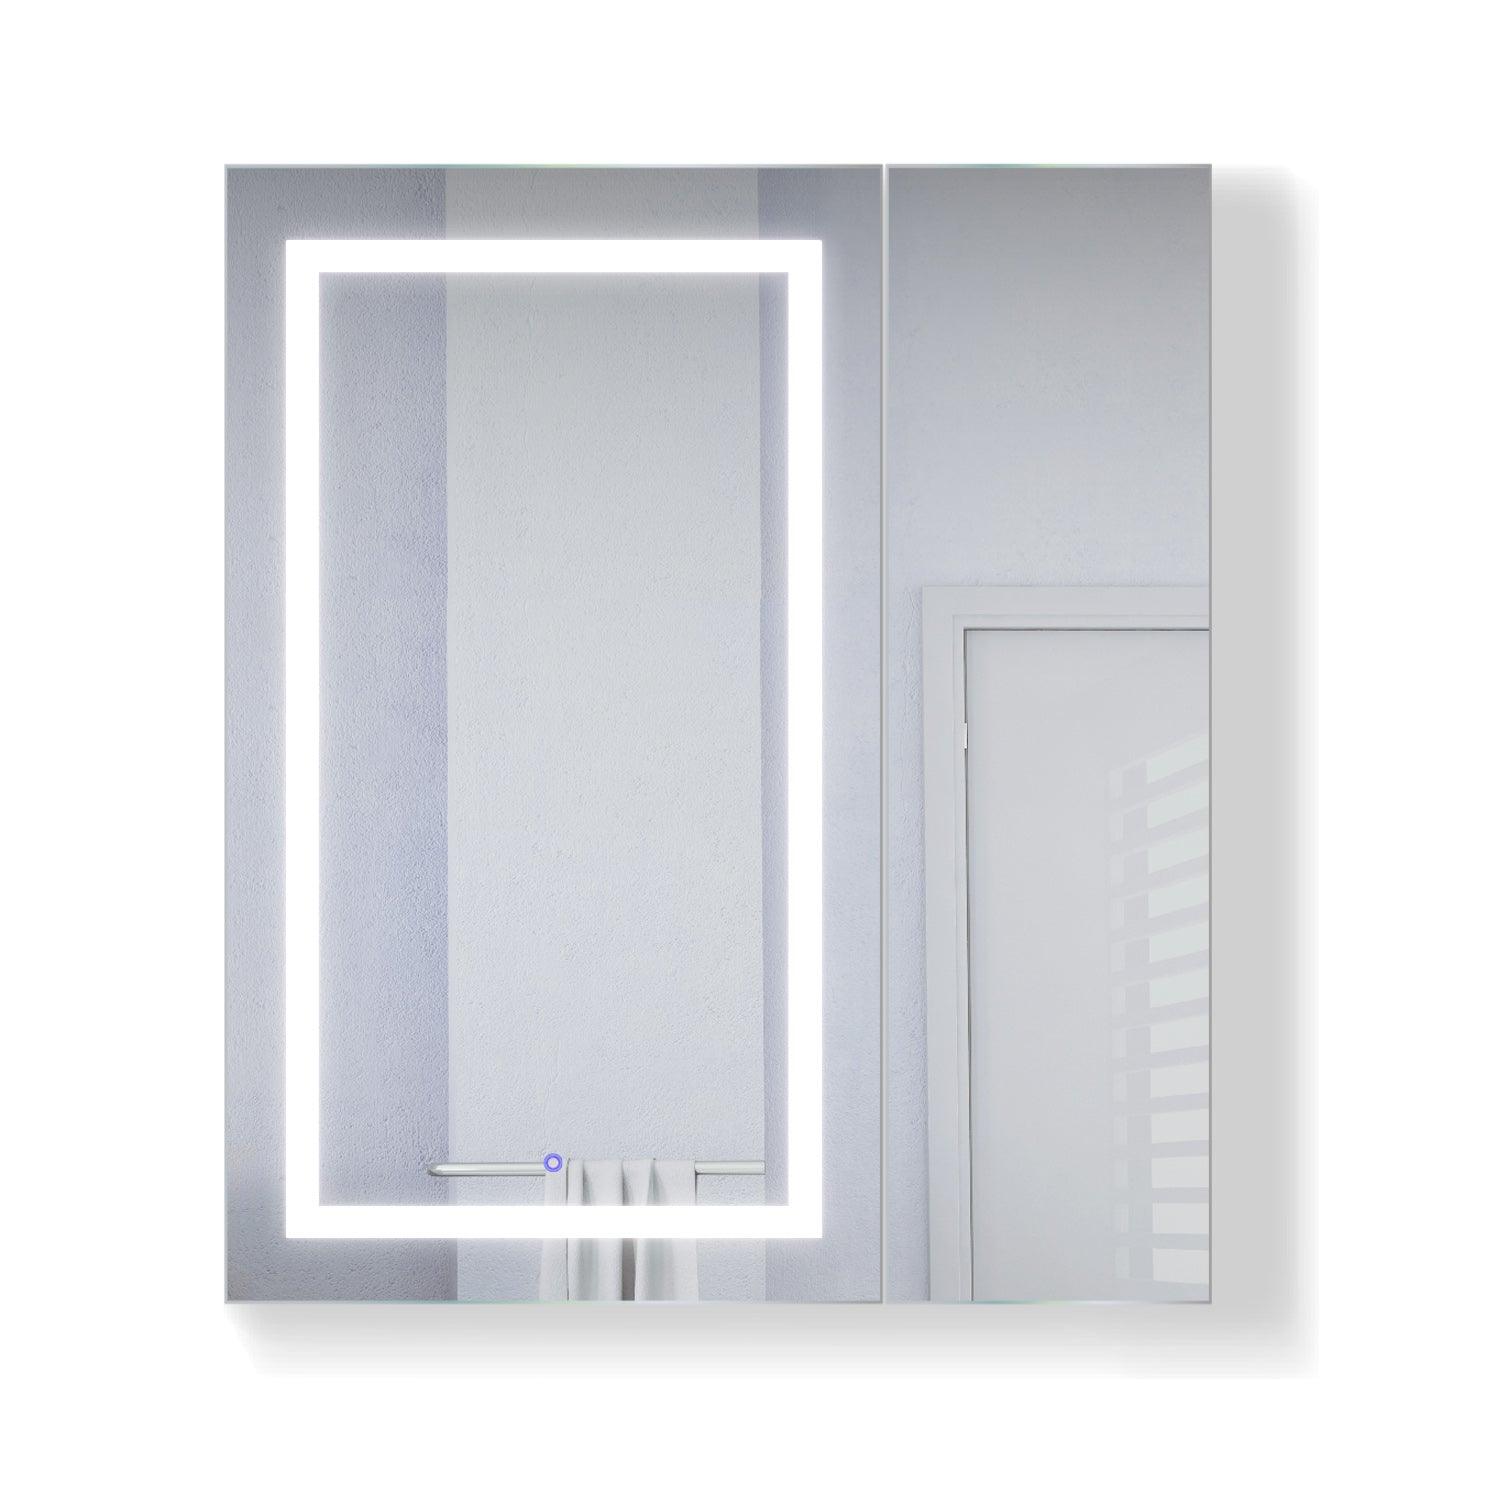 Krugg Svange 36″ X 42″ LED Medicine Cabinet w/Dimmer & Defogger